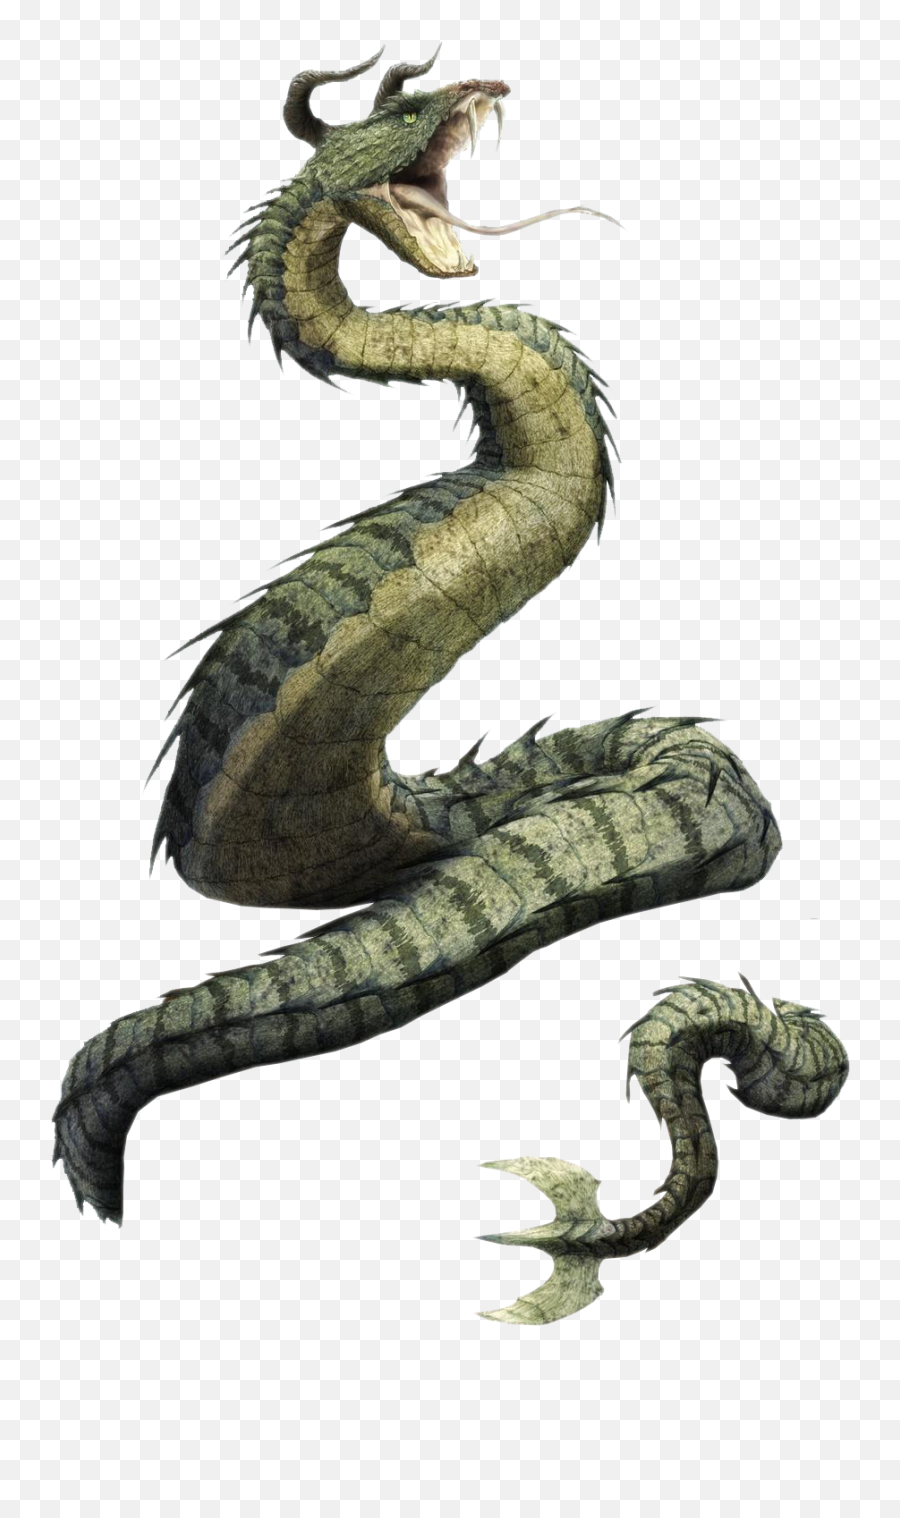 Serpent Png - Serpent Png Snake Dragons 3735358 Vippng Snake Dragon Concept Art Emoji,Snake Emoji